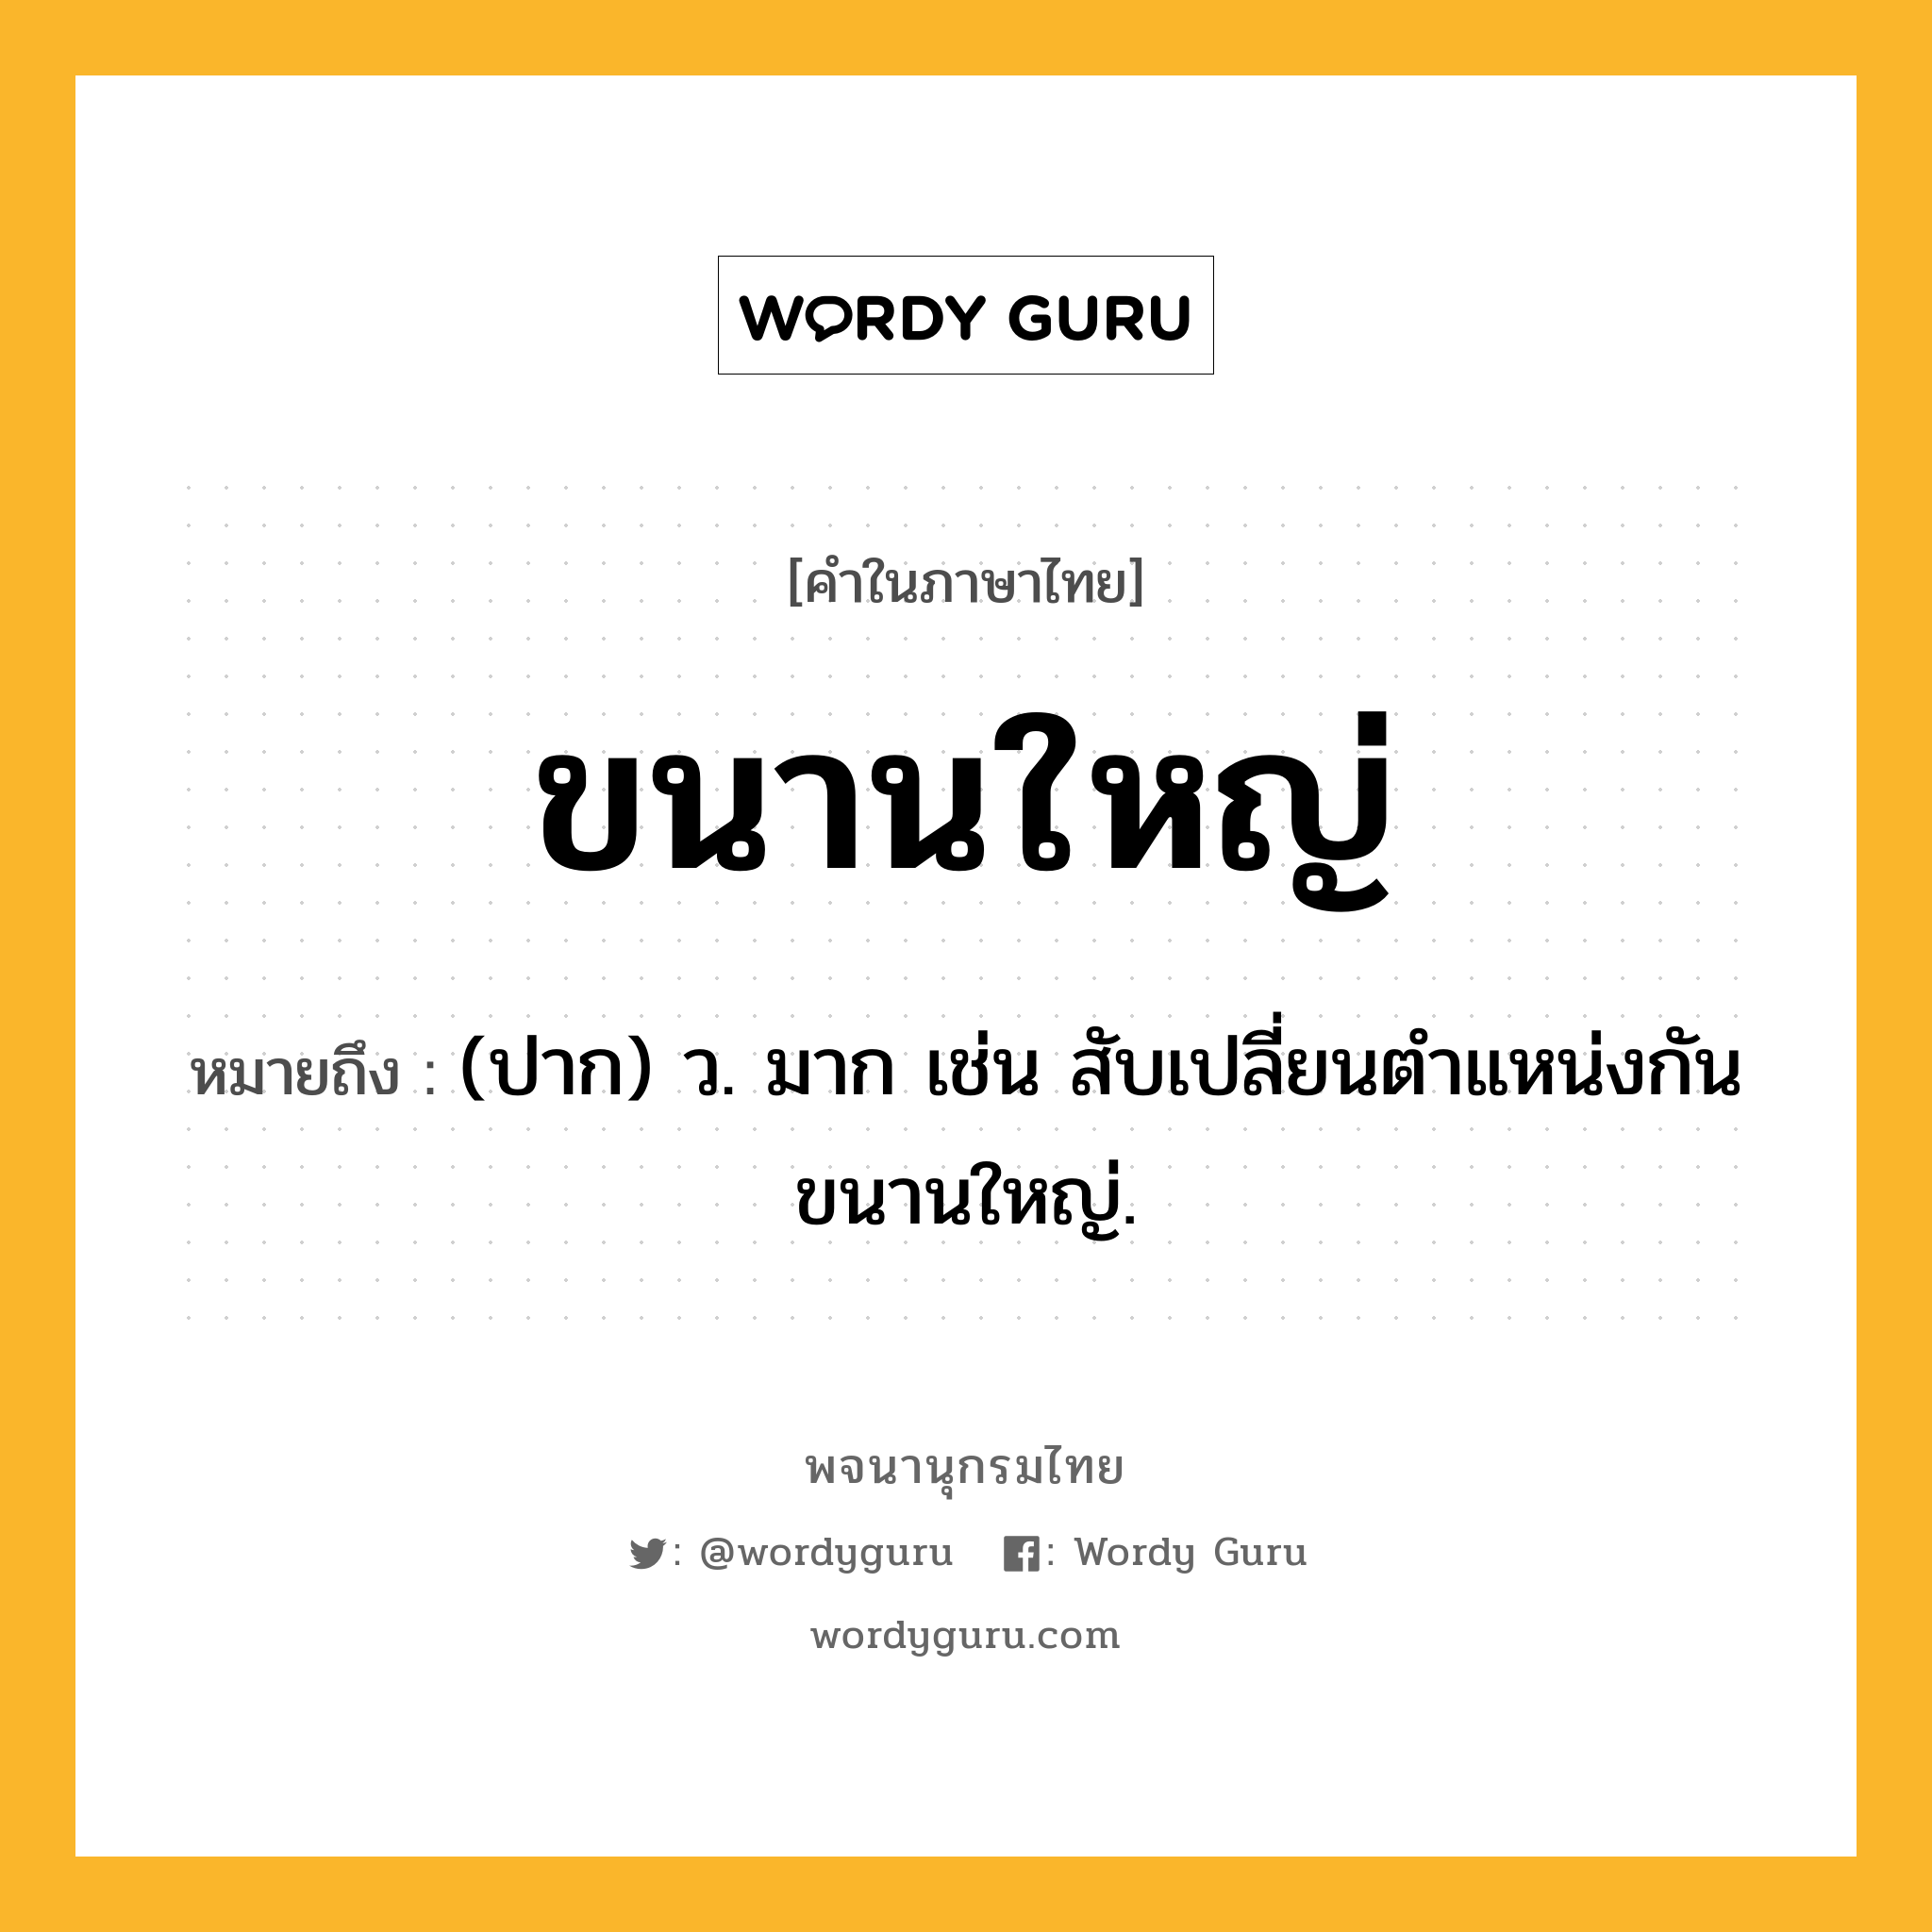 ขนานใหญ่ ความหมาย หมายถึงอะไร?, คำในภาษาไทย ขนานใหญ่ หมายถึง (ปาก) ว. มาก เช่น สับเปลี่ยนตำแหน่งกันขนานใหญ่.